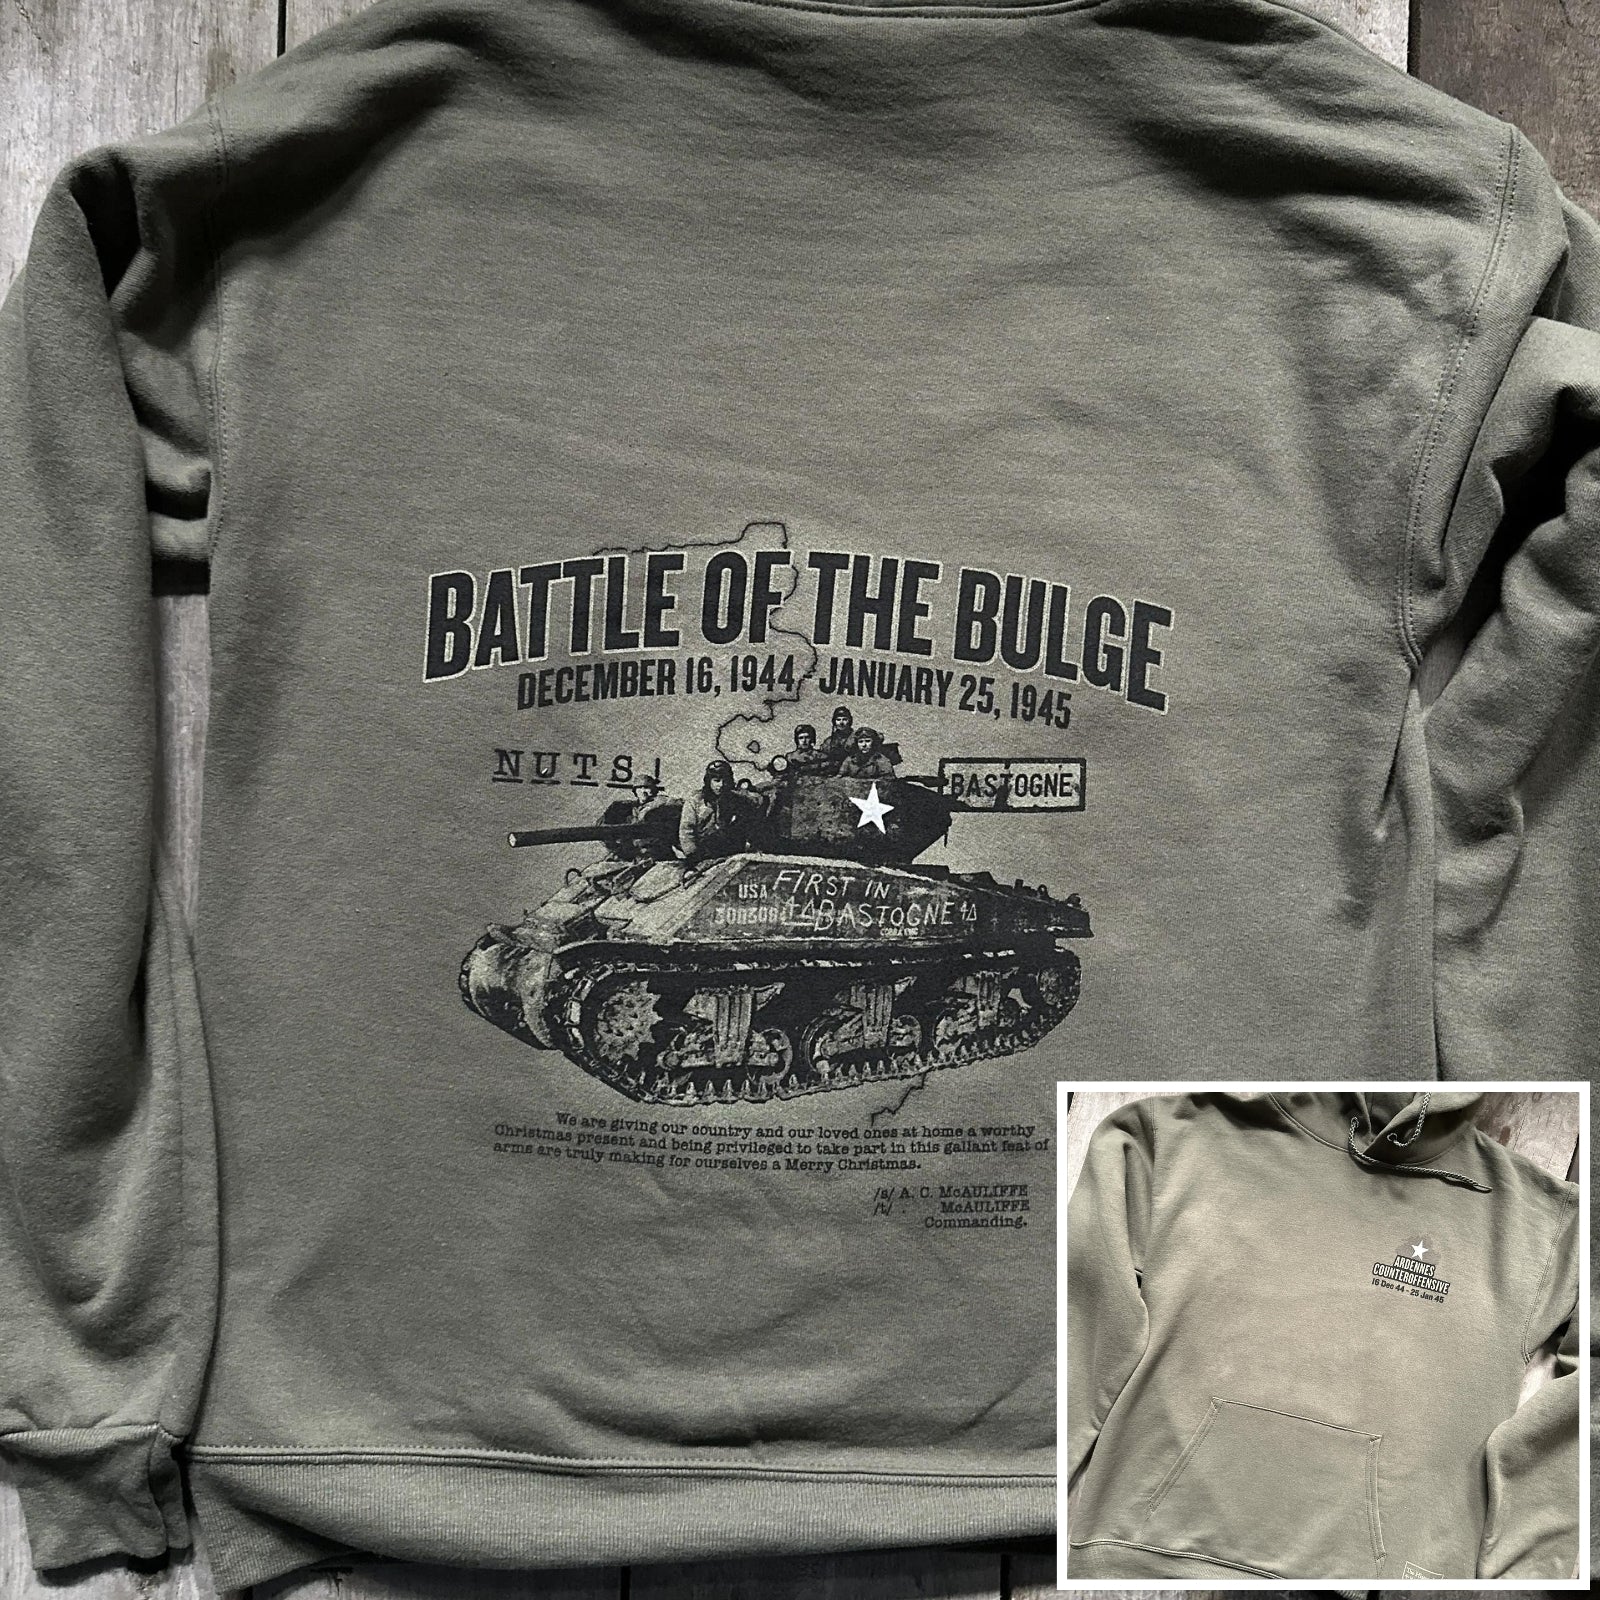 The Battle of the Bulge Hooded sweatshirt